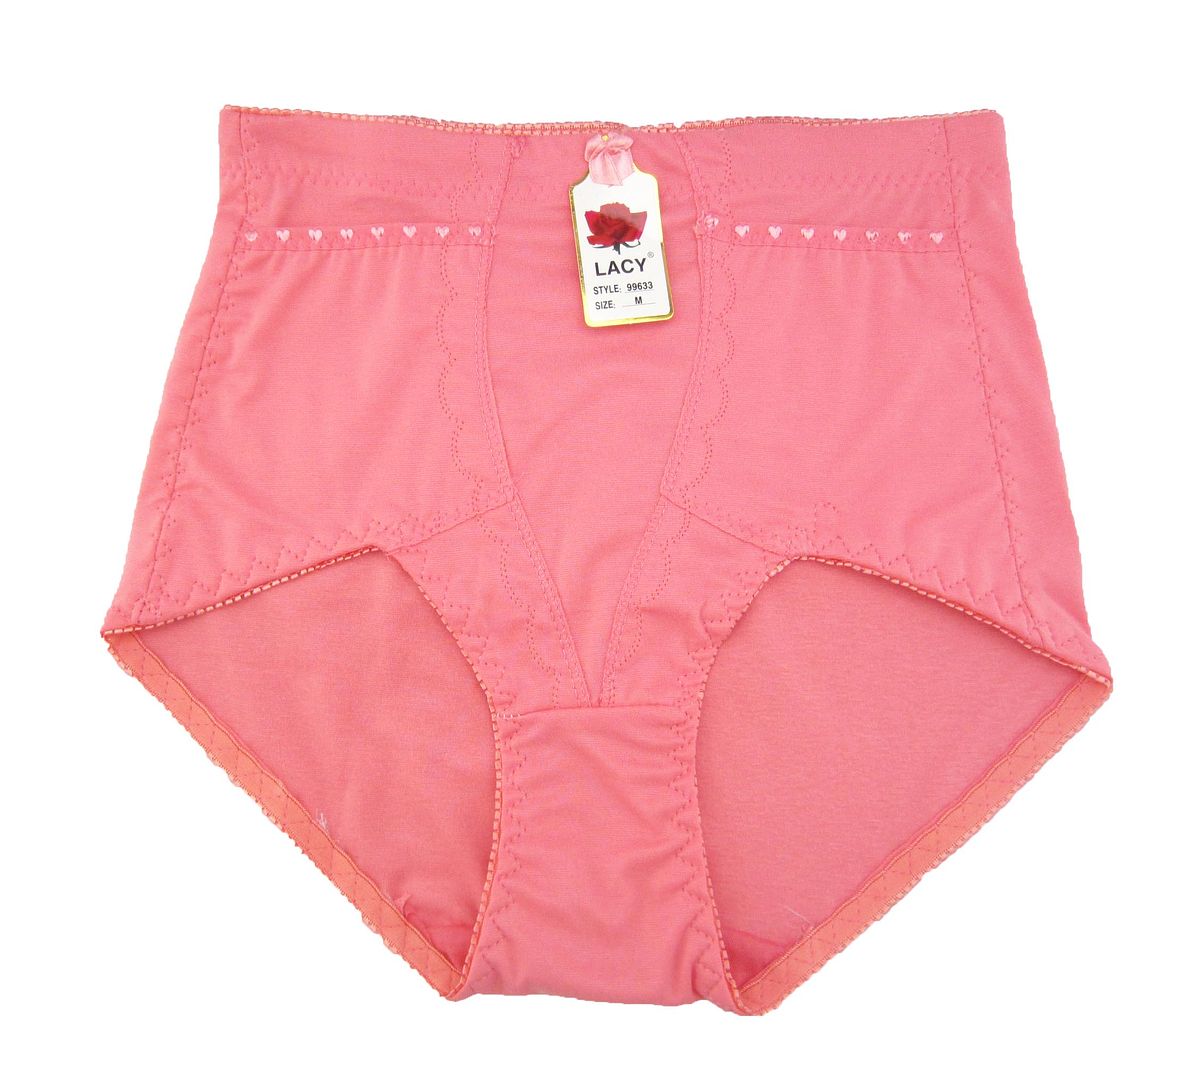 Lot of 12 WAIST Double Pocket WOMEN GIRDLE Underwear #99633 S M L XL 2X ...